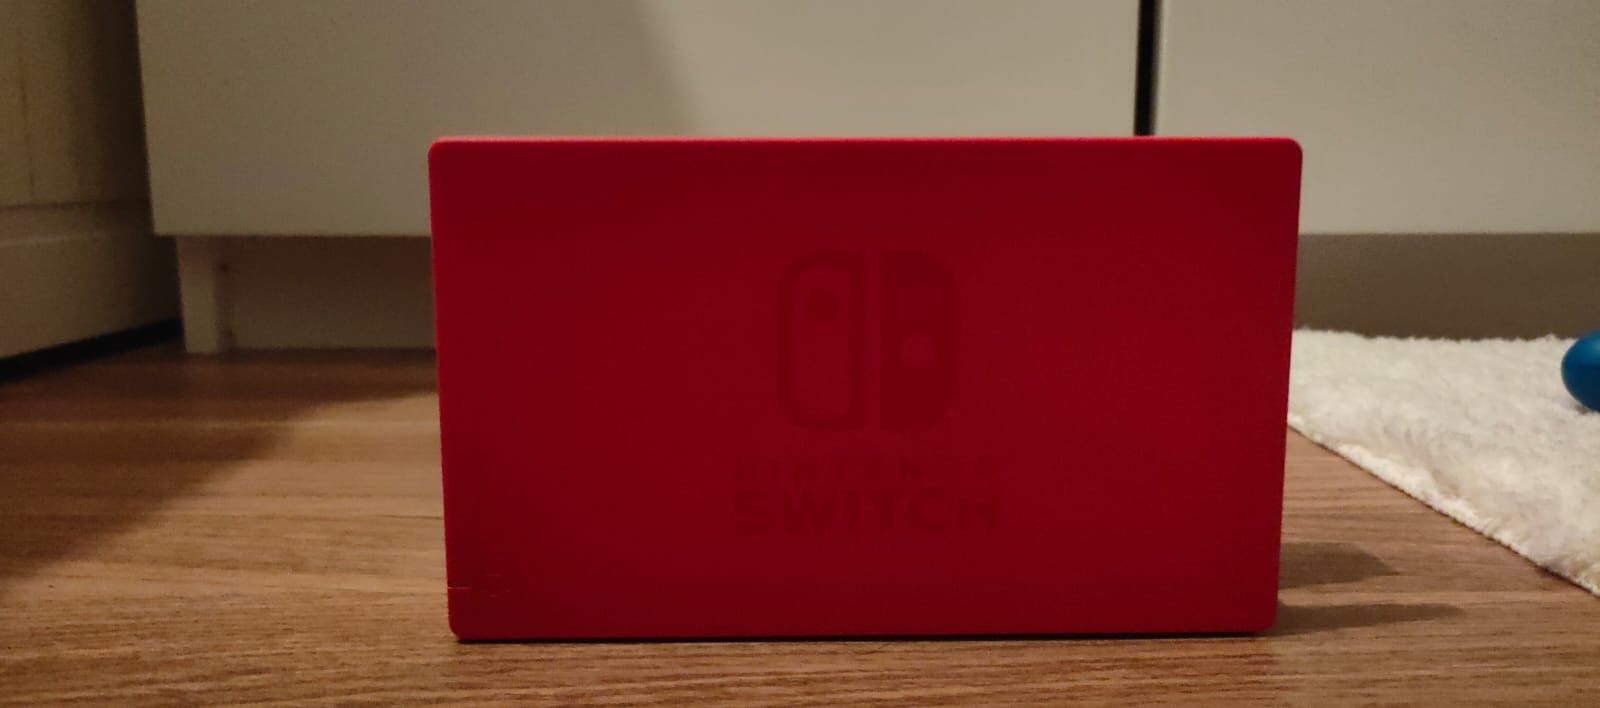 Nintendo Switch versão mario azul e vermelho com 2 jogos e acessórios